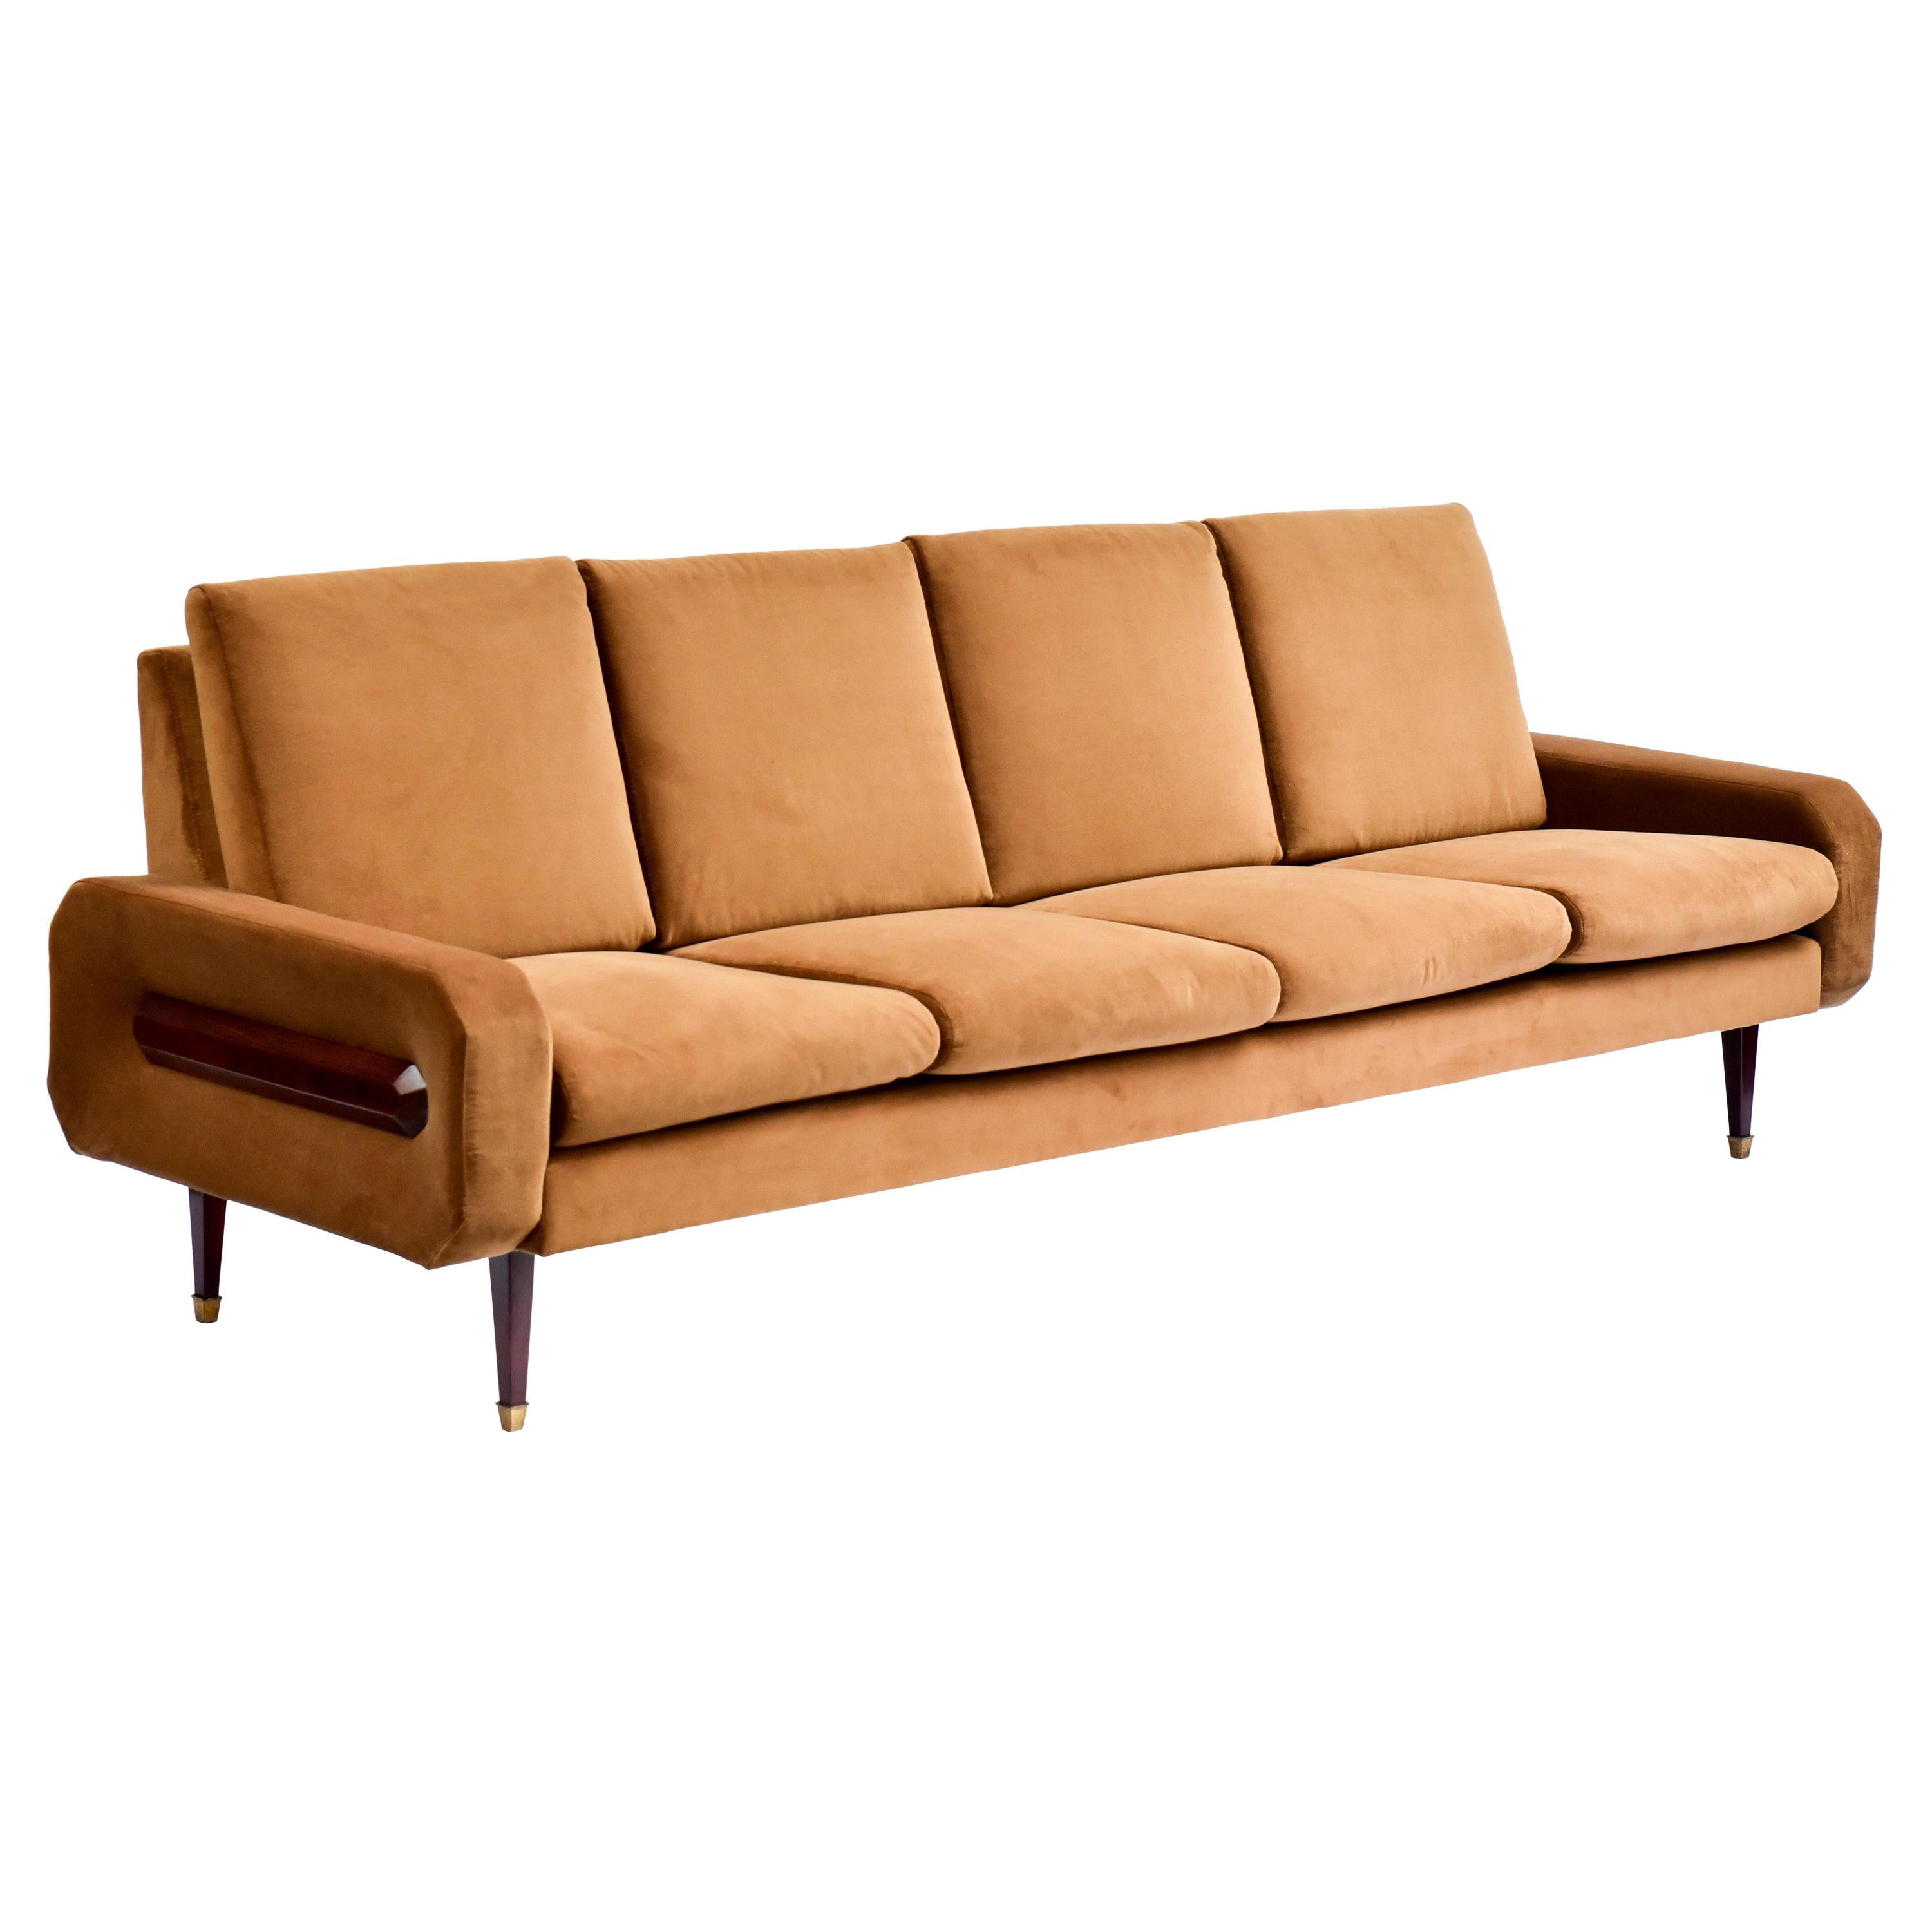 60's Sofa in Brazilian Wood